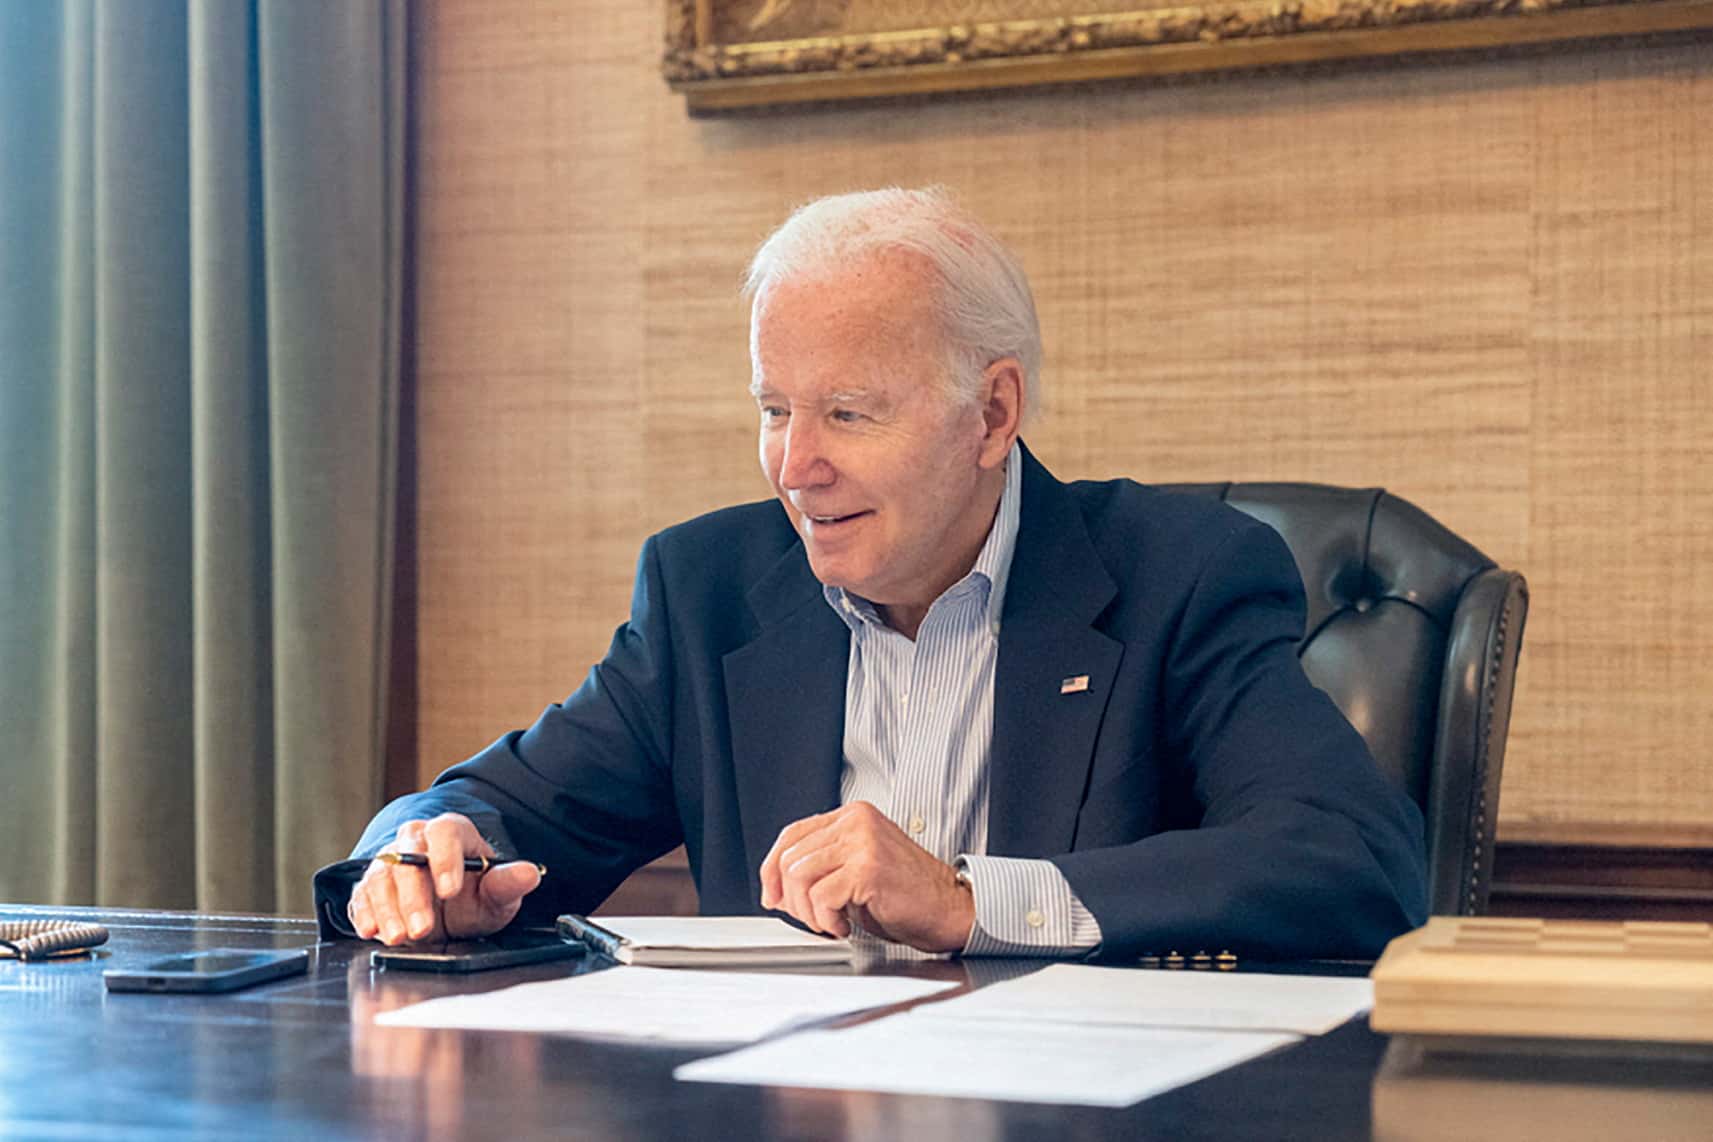 El presidente de EUA, Joe Biden, quien dio positivo por COVID-19 se sienta en su escritorio en la residencia de la Casa Blanca (Reuters)